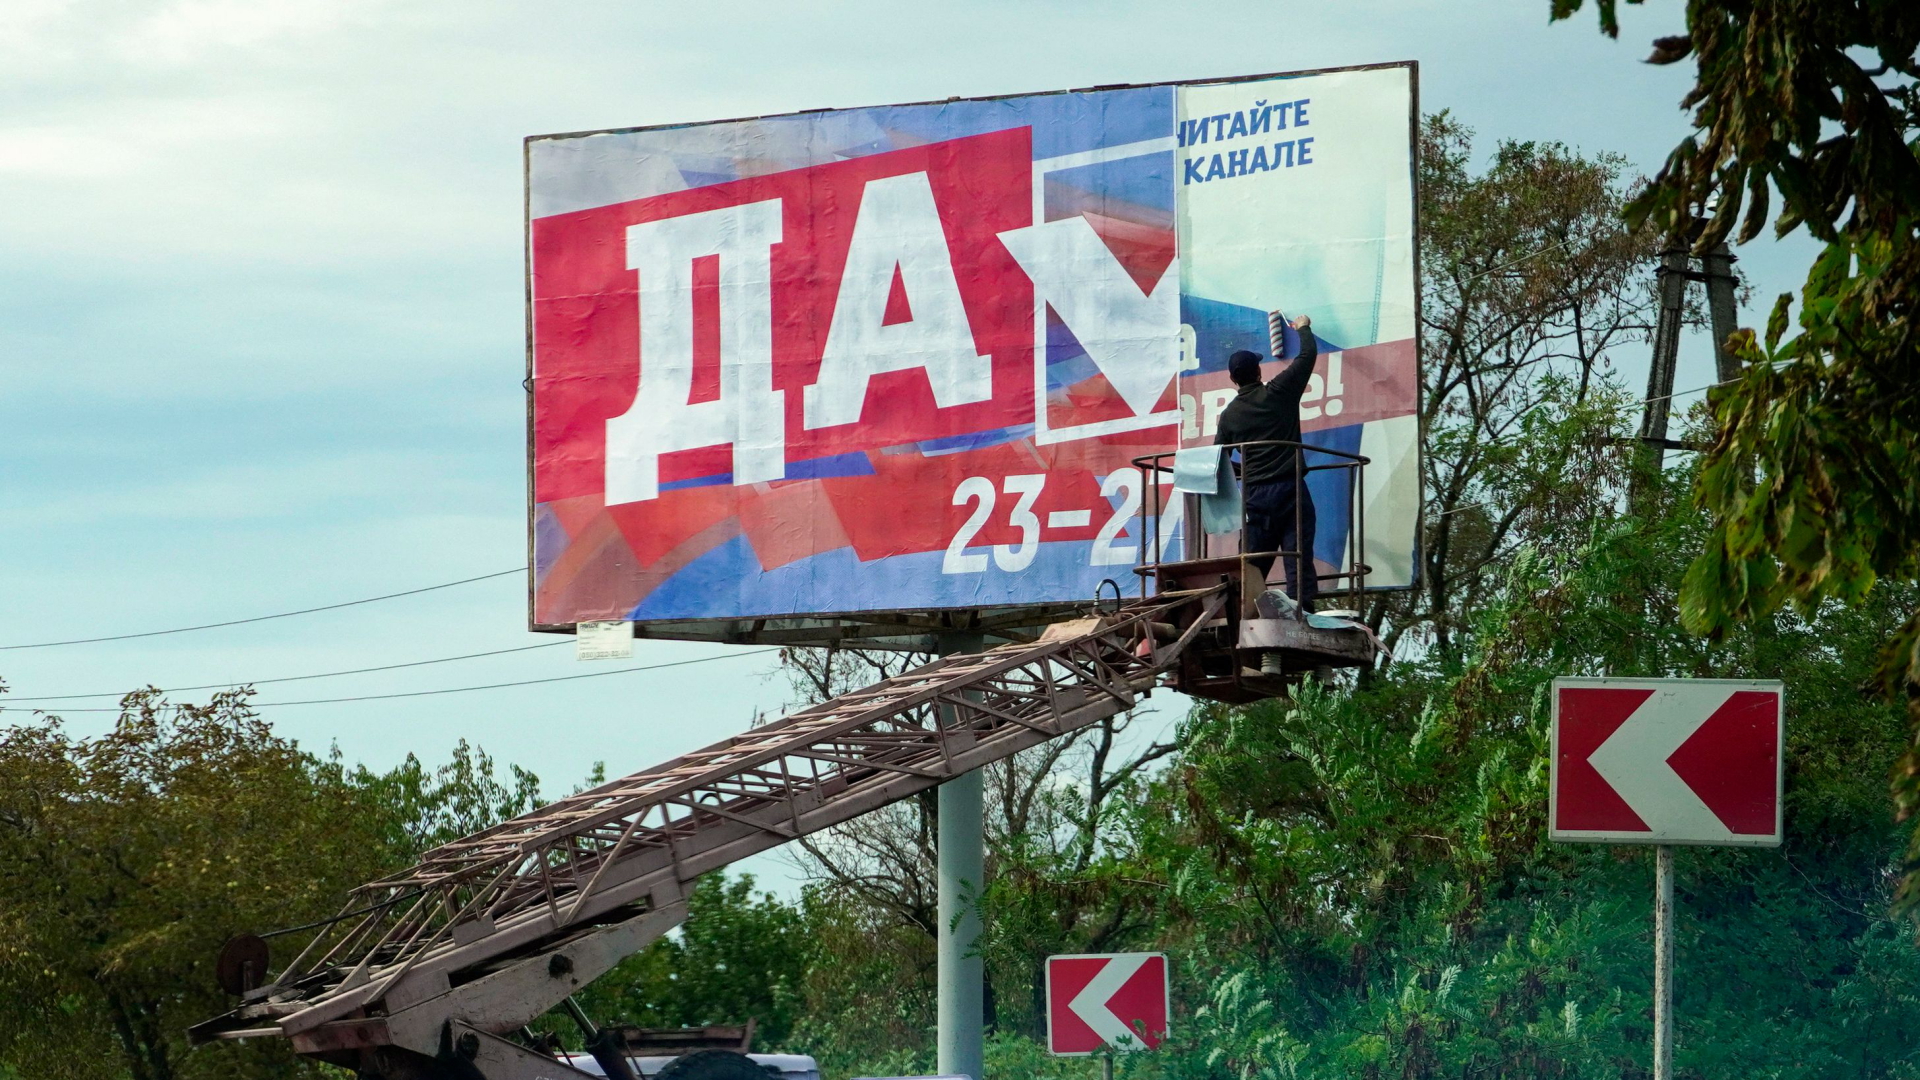 Plakat wirbt für das Scheinreferendum in der Region Saporischschja